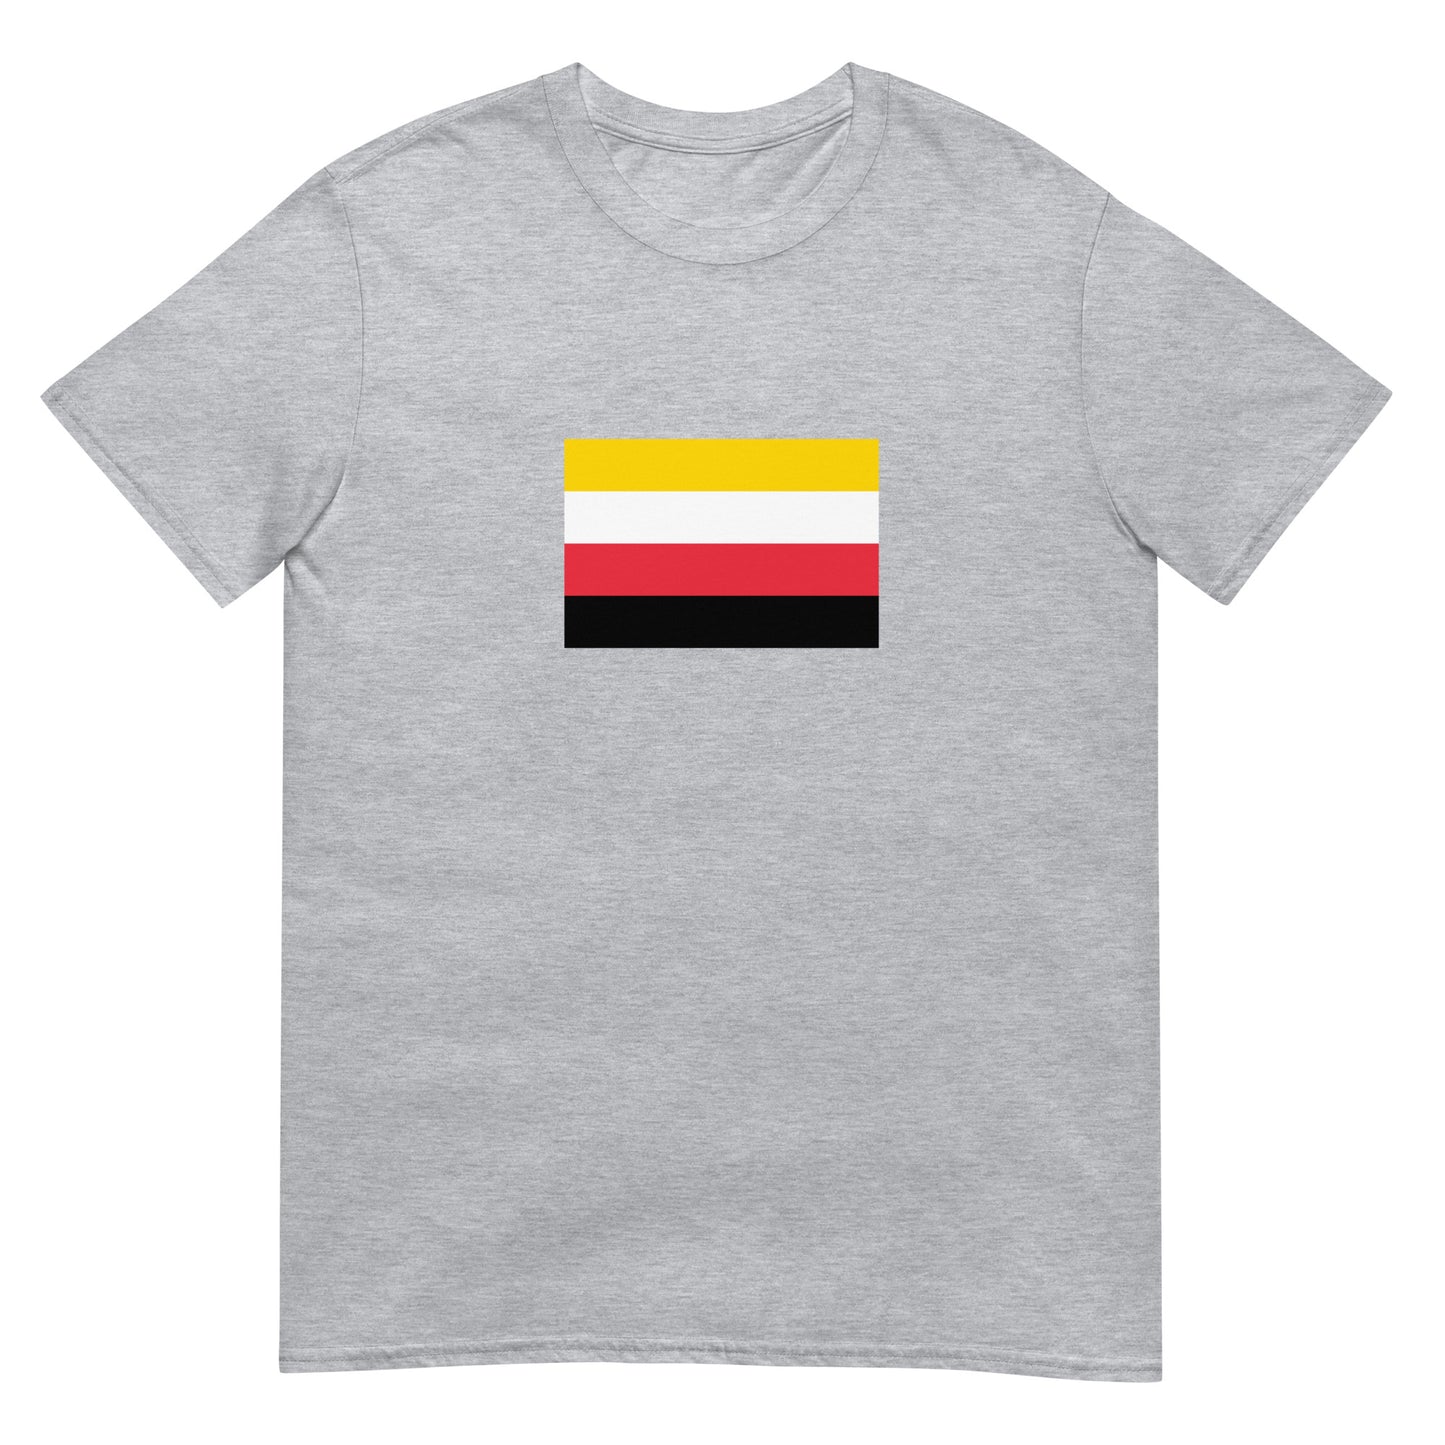 Chile - Qulla Indigenous People | Ethnic Flag Short-Sleeve Unisex T-Shirt